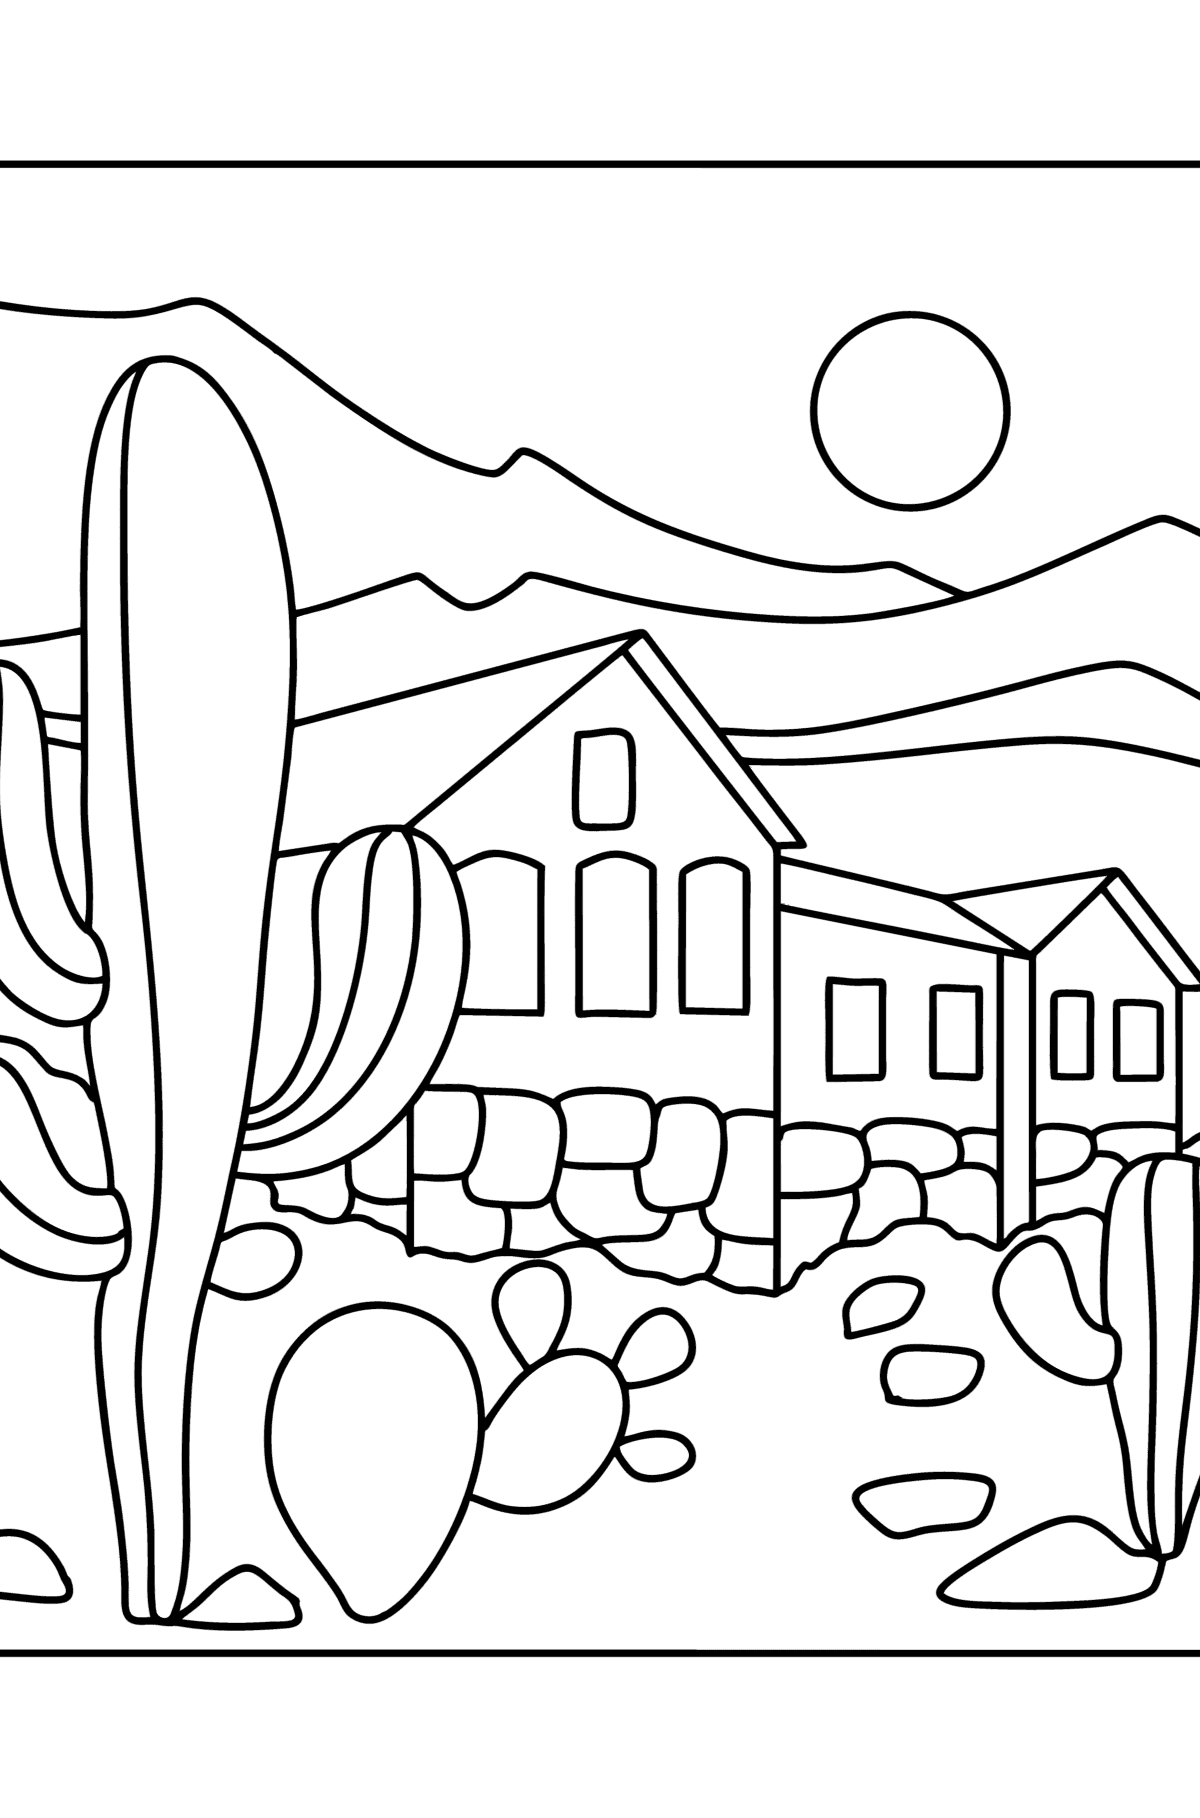 Kleurplaat huisje in de woestijn - kleurplaten voor kinderen